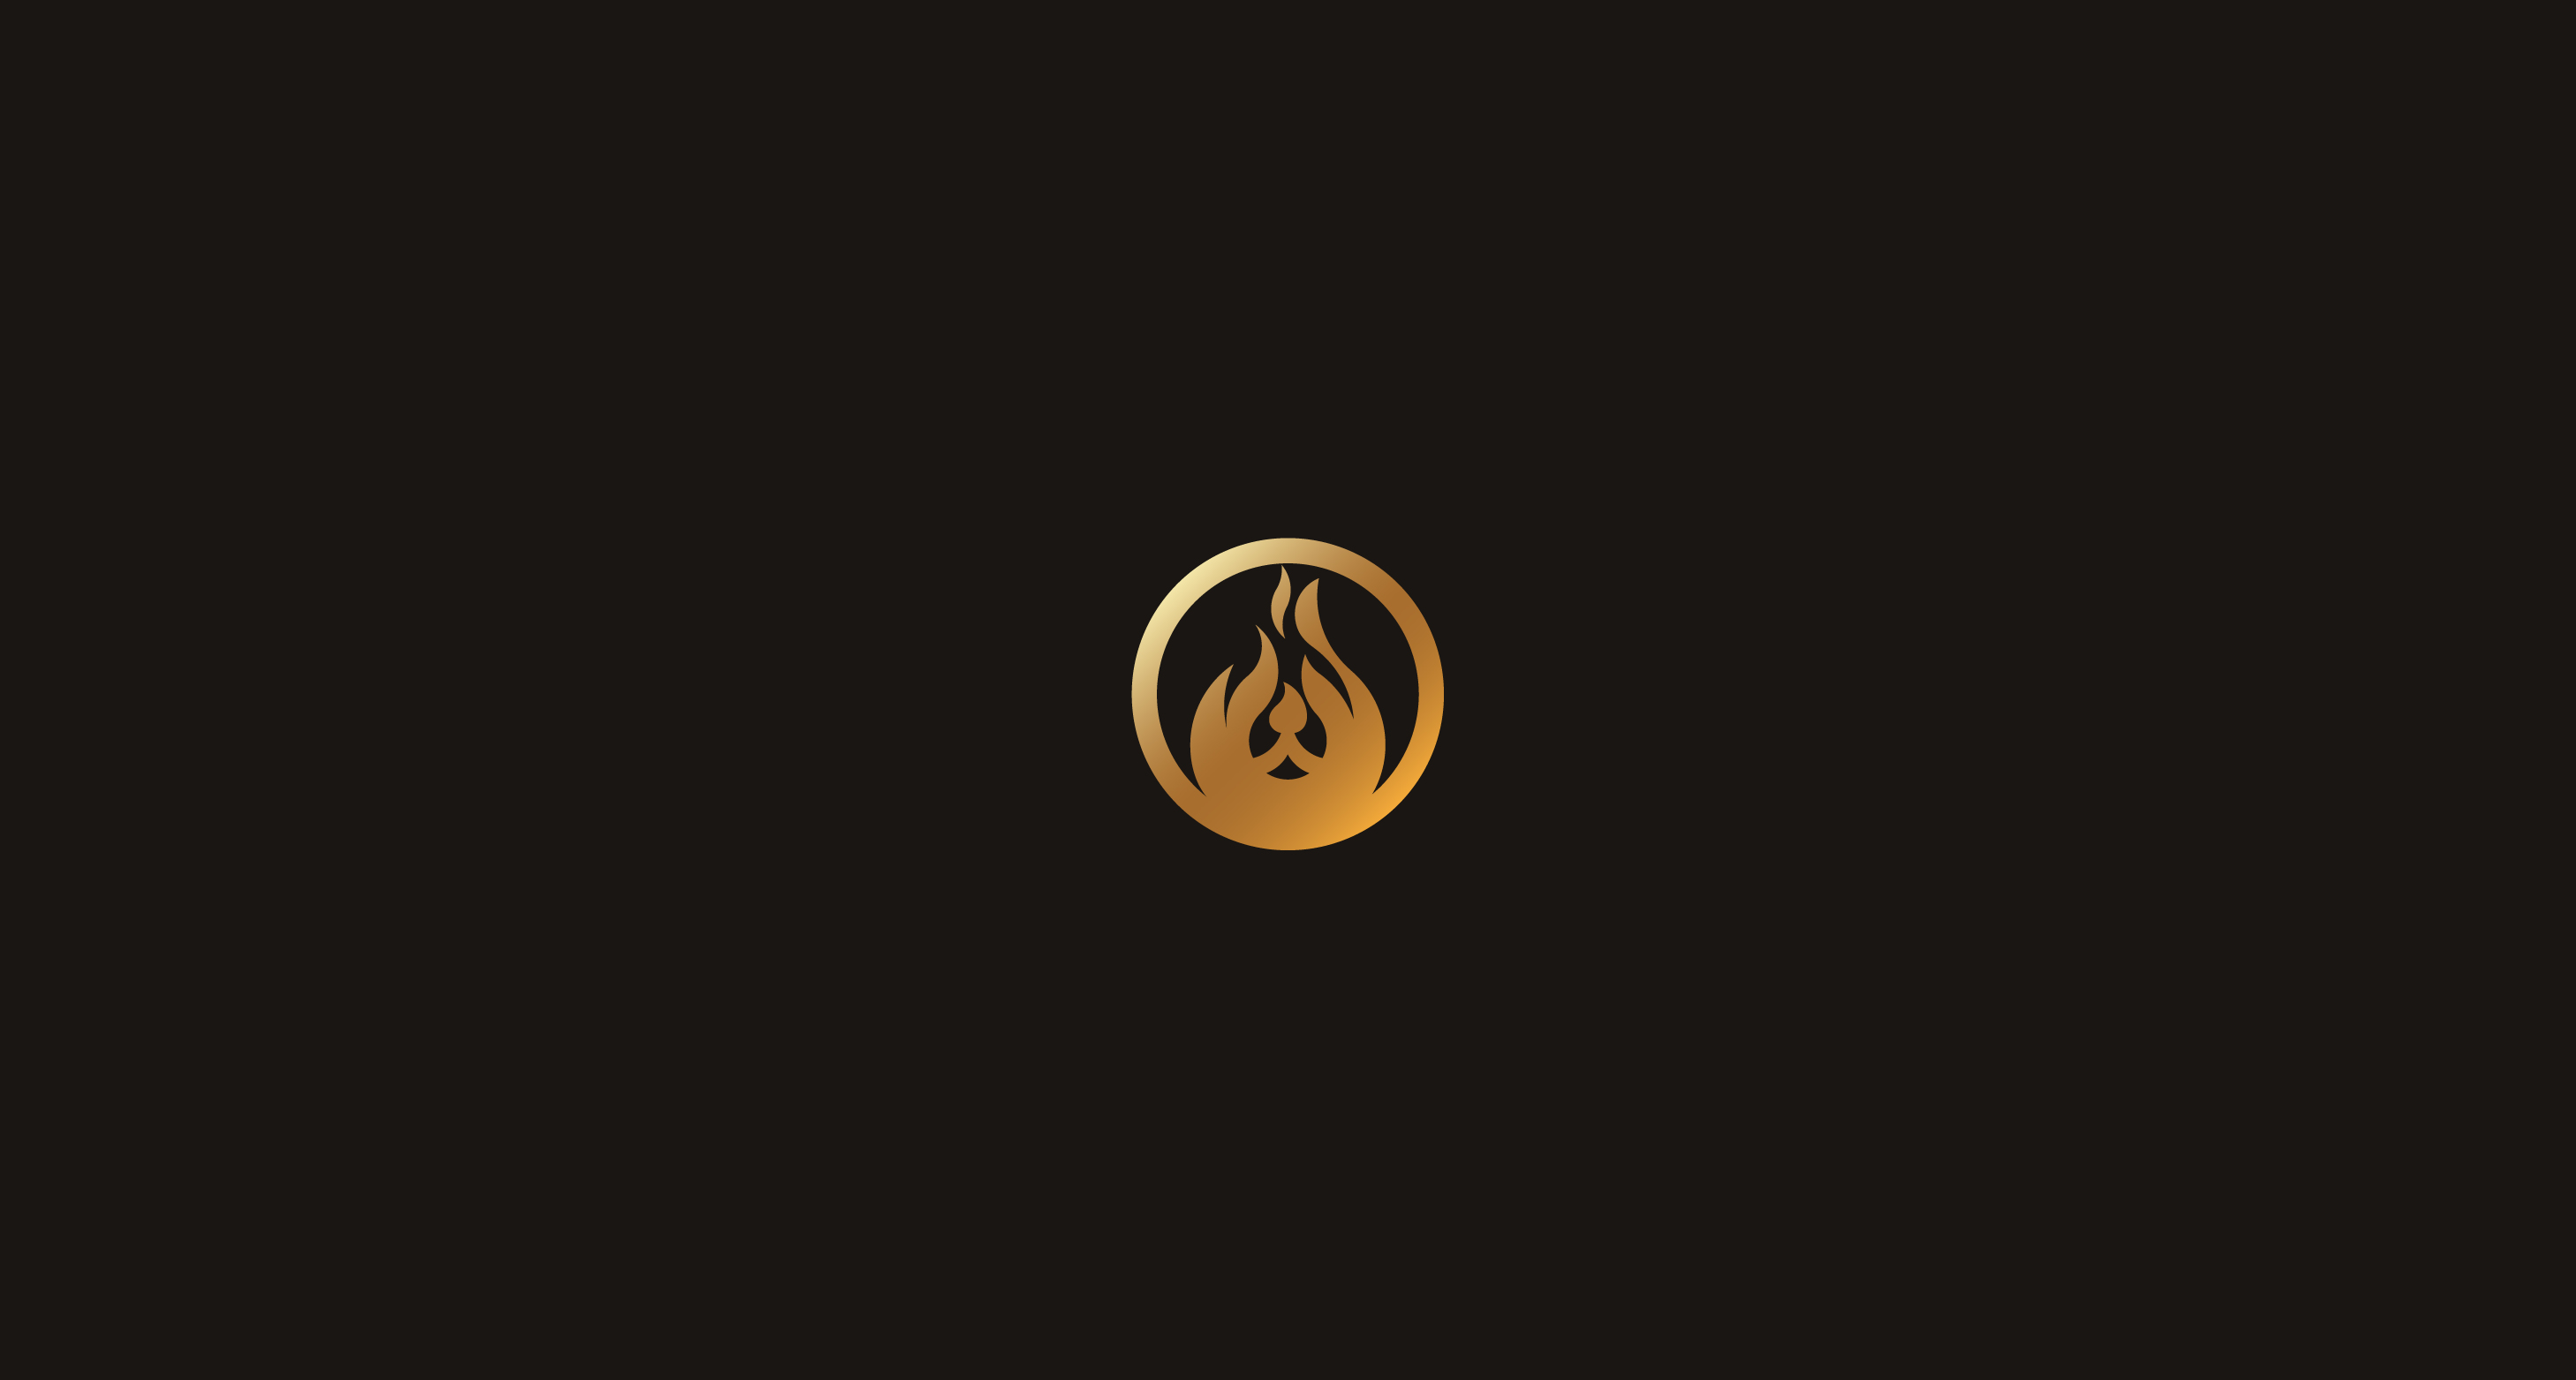 Bear logo design & golden ratio